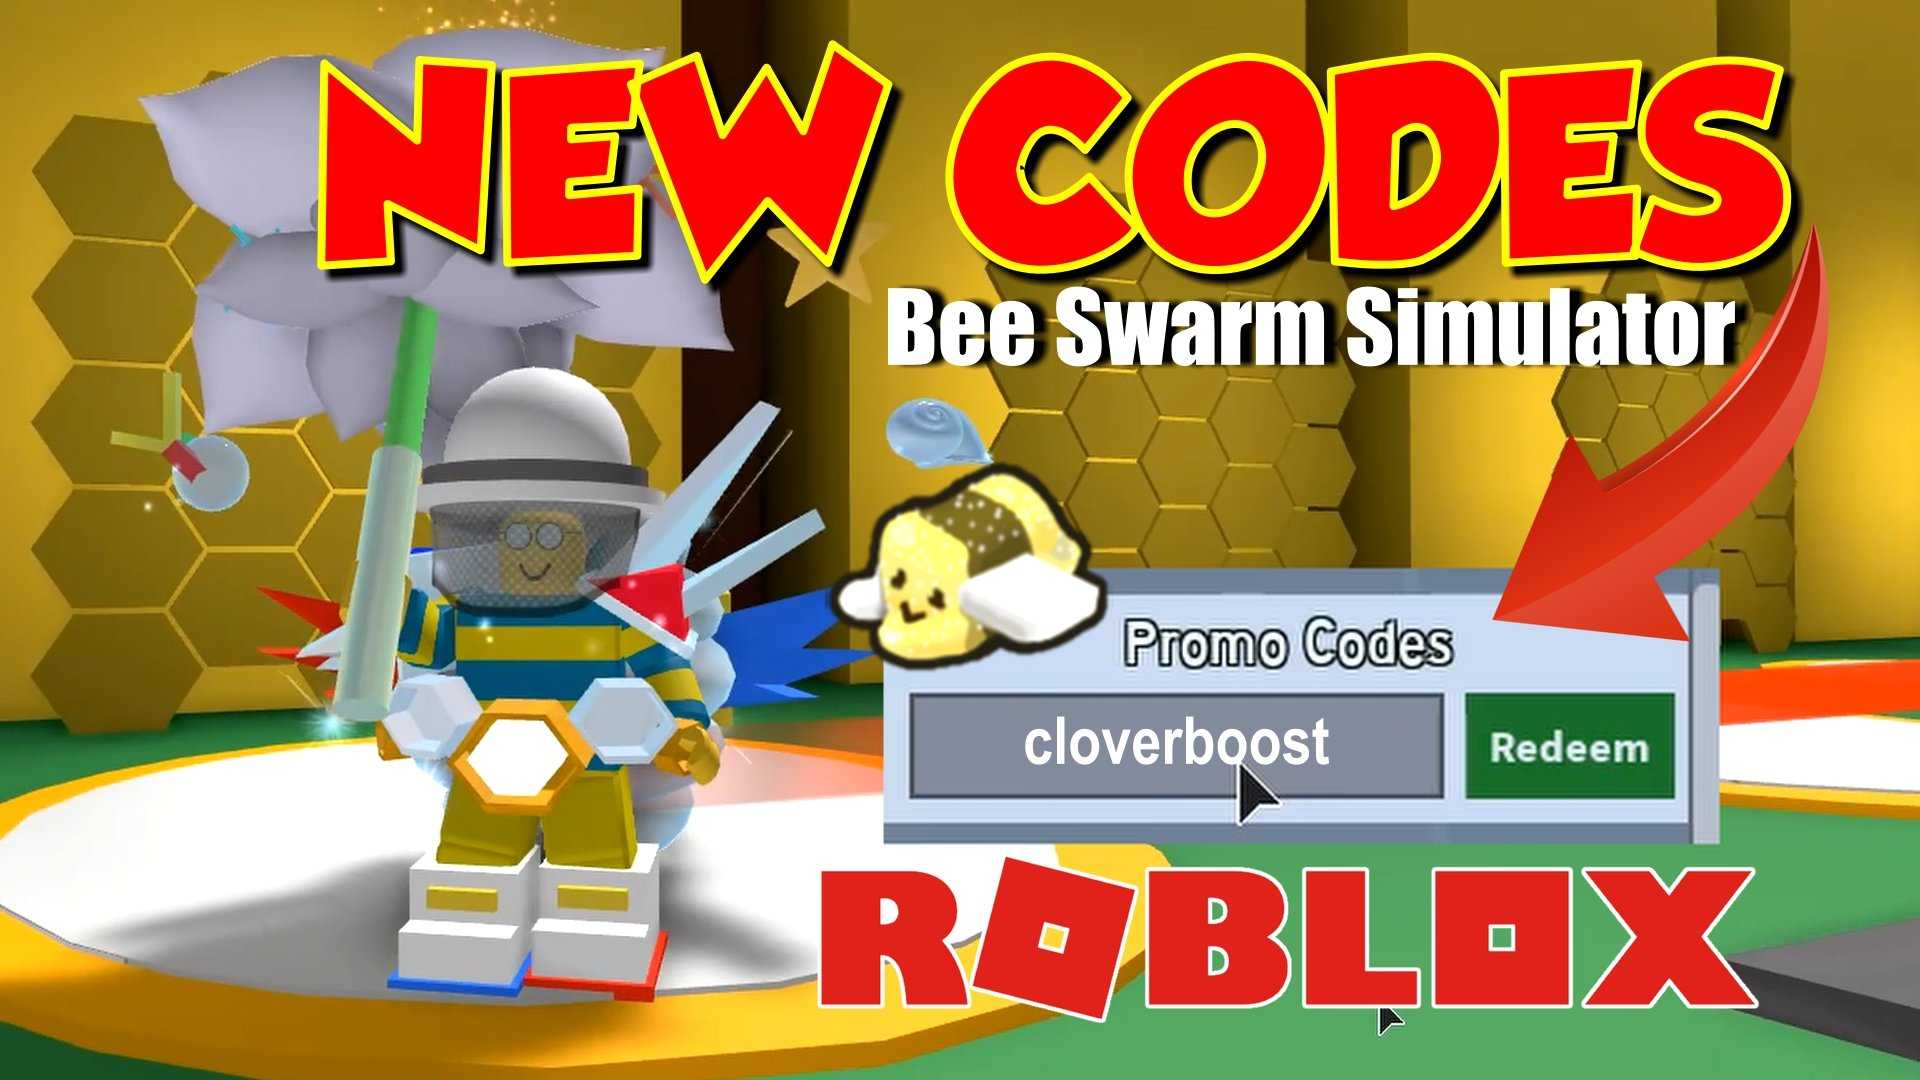 Роблокс пчеловод коды. Bee Swarm Simulator codes. РОБЛОКС Bee Swarm Simulator. РОБЛОКС промокоды Bee Swarm Simulator. Roblox Bee Swarm Simulator codes.